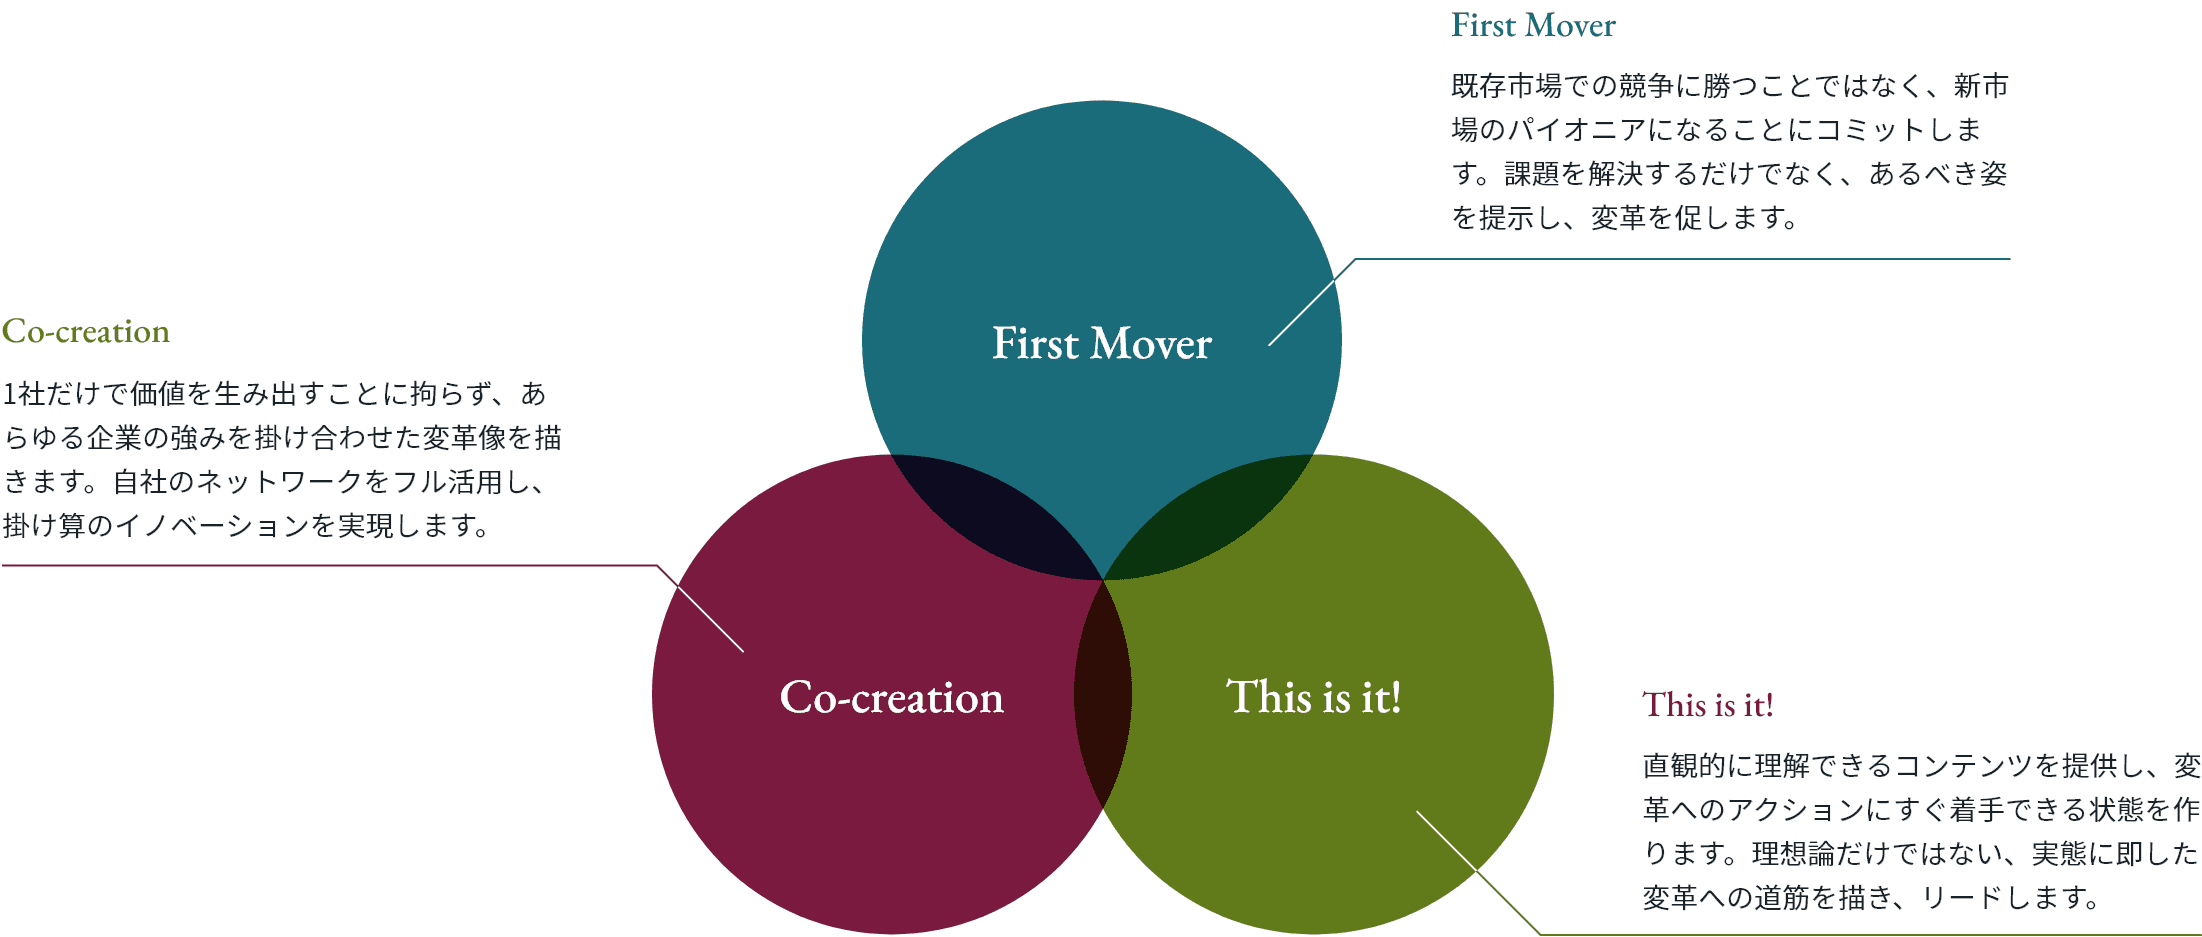 First Mover：既存市場での競争に勝つことではなく、新市場のパイオニアになることにコミットします。課題を解決するだけでなく、あるべき姿を提示し、変革を促します。、Co-creation：1社だけで価値を生み出すことに拘らず、あらゆる企業の強みを掛け合わせた変革像を描きます。自社のネットワークをフル活用し、掛け算のイノベーションを実現します。、This is it!：直観的に理解できるコンテンツを提供し、変革へのアクションにすぐ着手できる状態を作ります。理想論だけではない、実態に即した変革への道筋を描き、リードします。